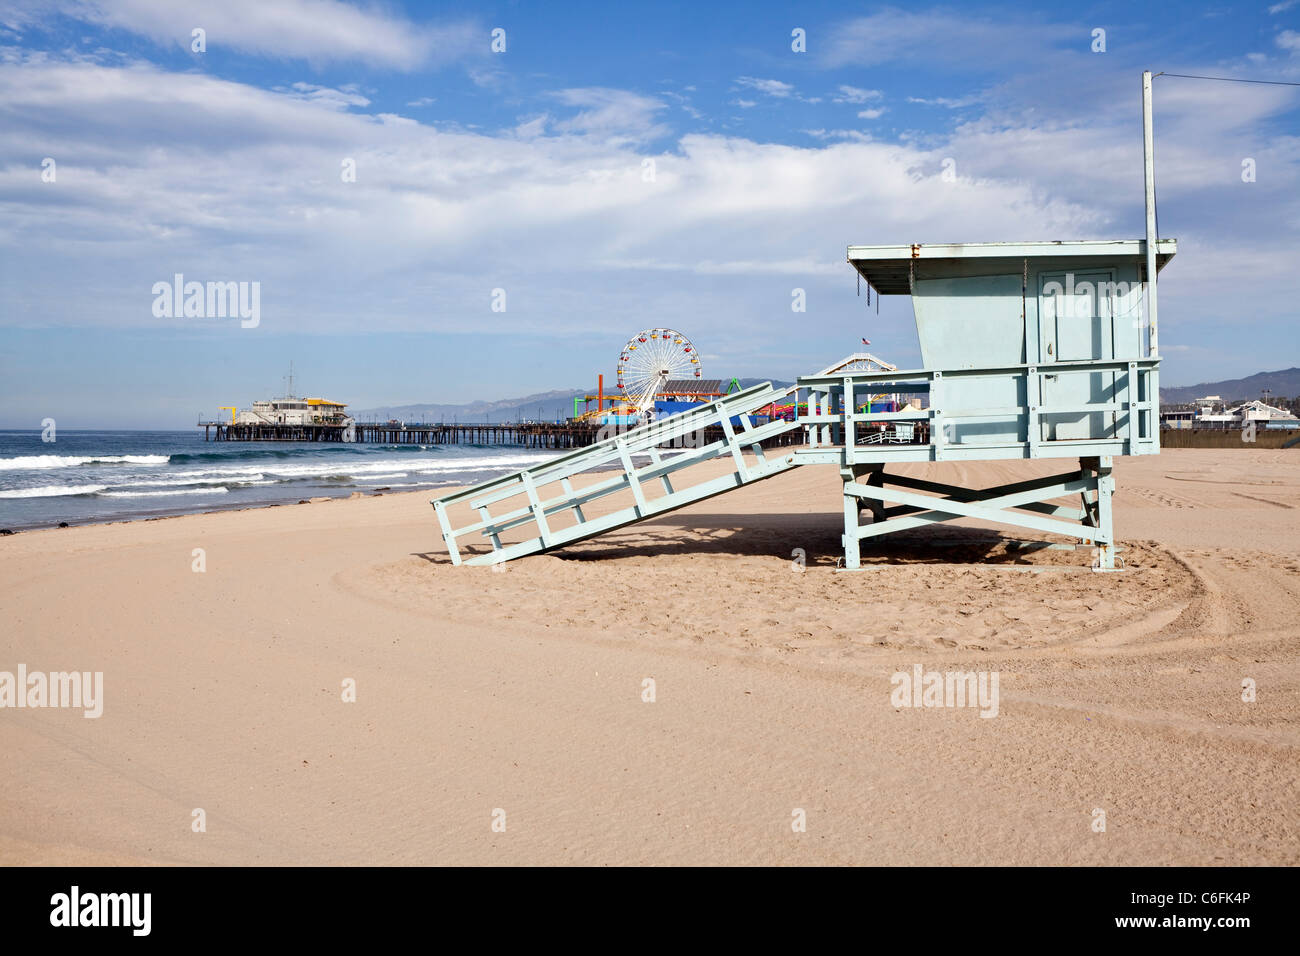 La plage de Santa Monica Pier et de la vie, tour de garde sous le soleil de Californie du sud. Banque D'Images